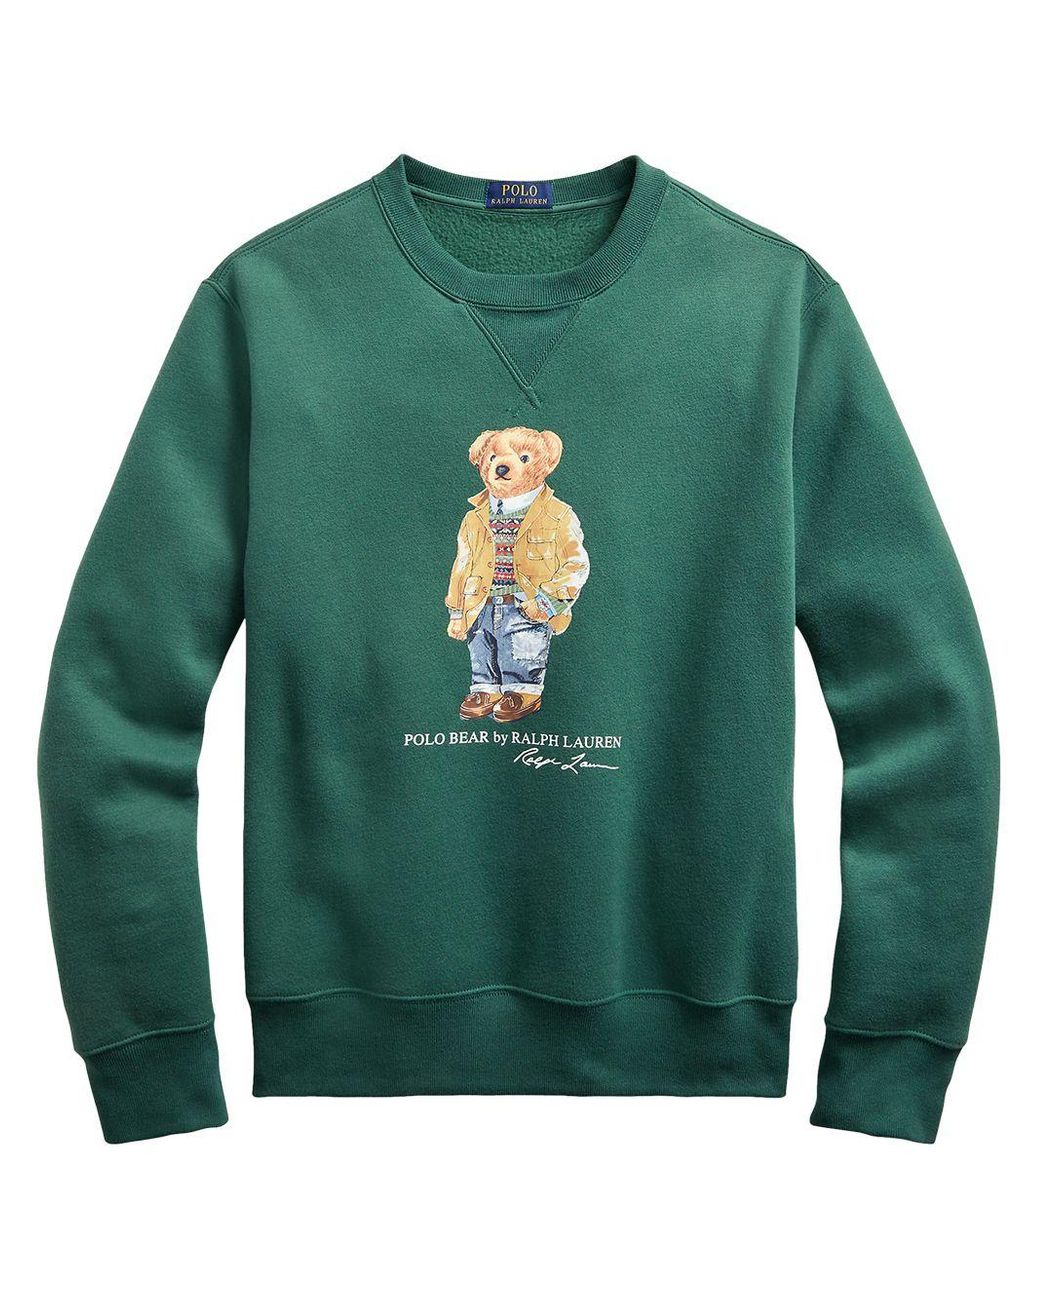 Polo Ralph Lauren Polo Bear Sweatshirt in Green for Men - Lyst